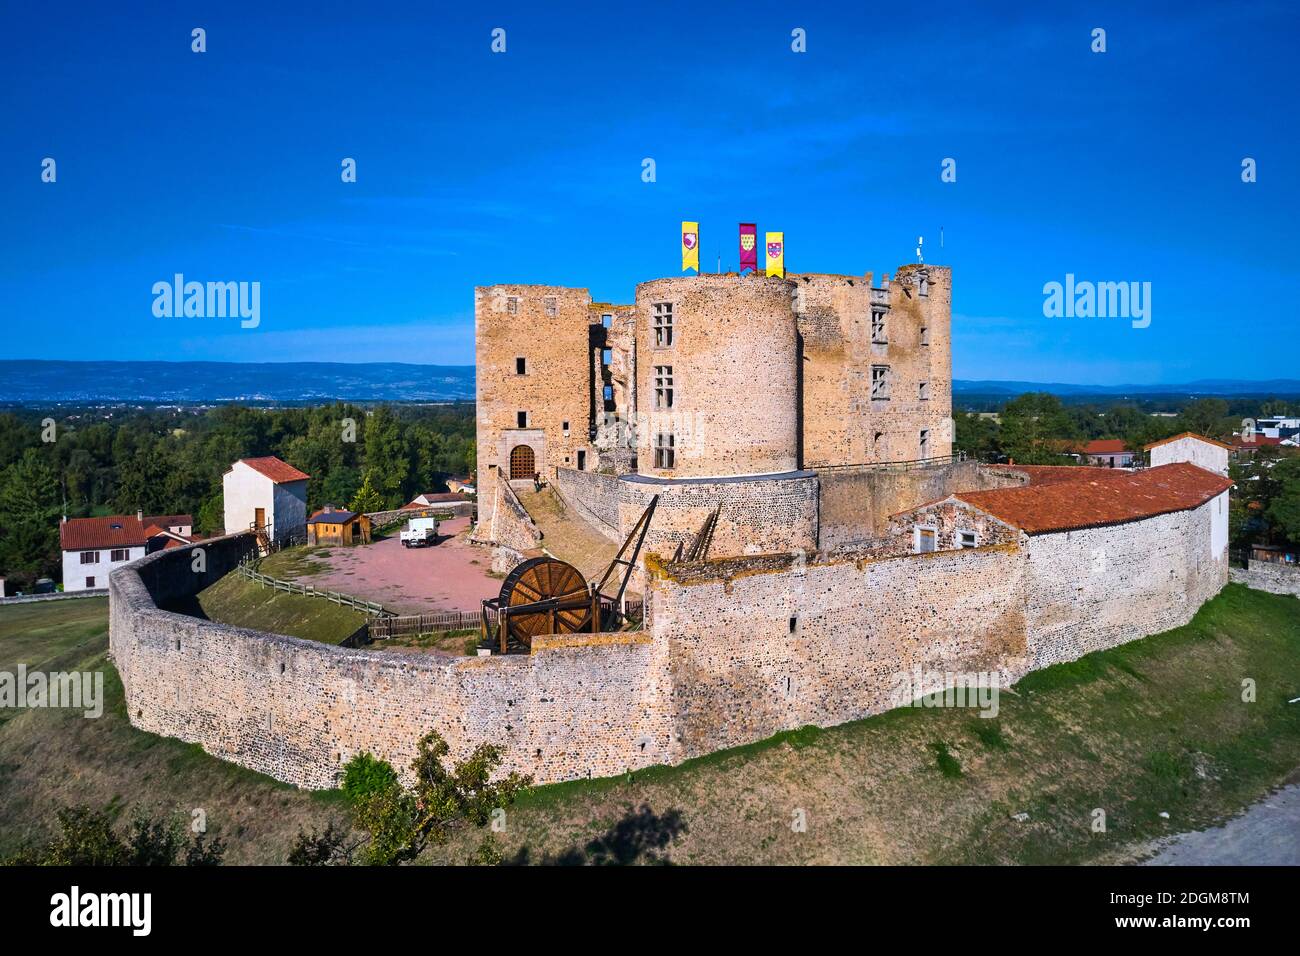 France, Loire (42), Montrond-les-Bains, Montrond castle, Loire valley Stock Photo